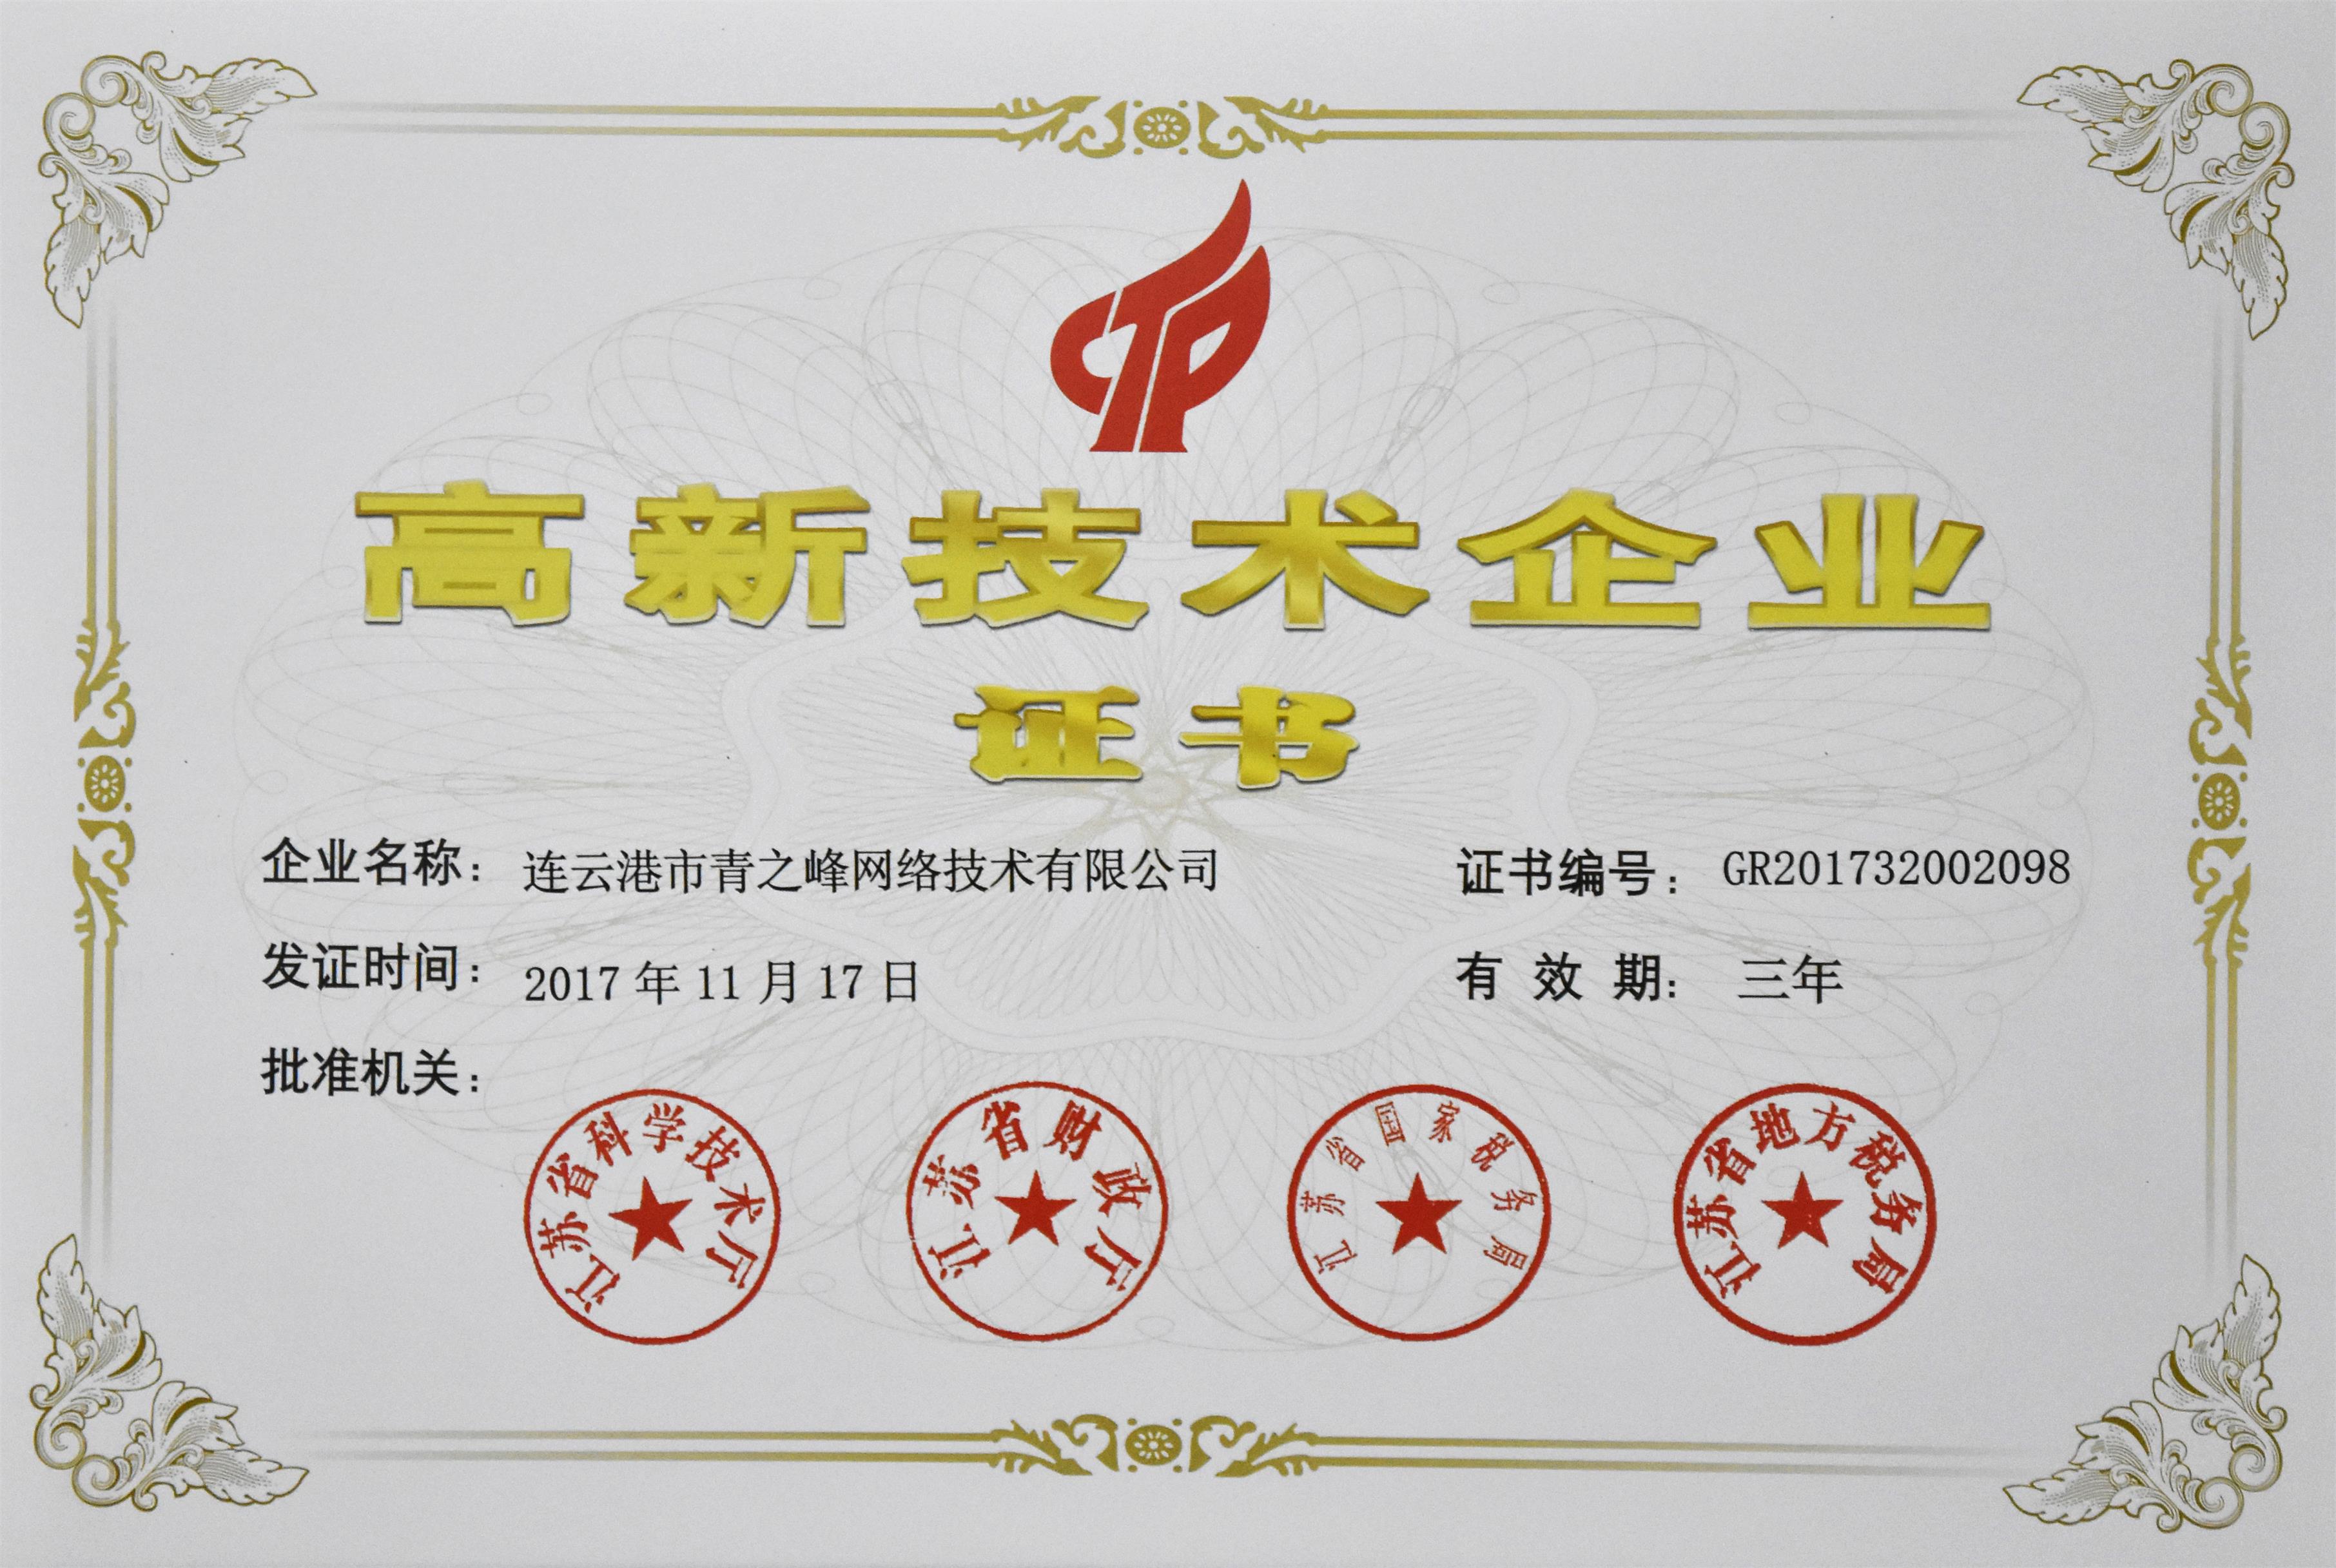 恭贺连云港青之峰通过“国家高新技术企业”认证！